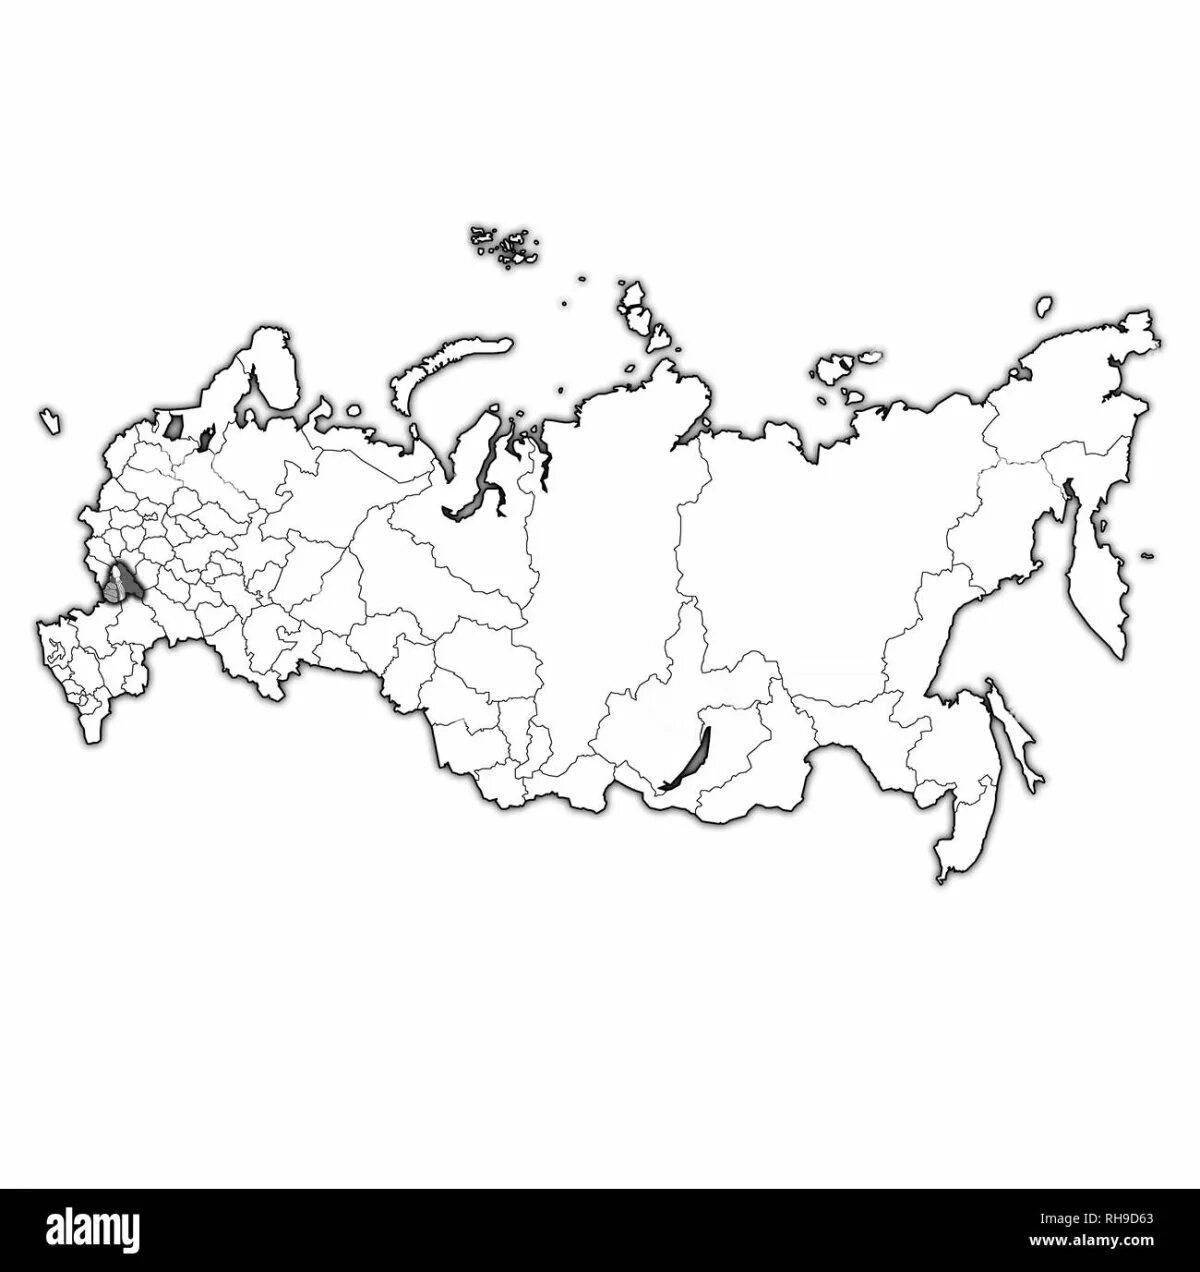 Впечатляющая карта россии с регионами